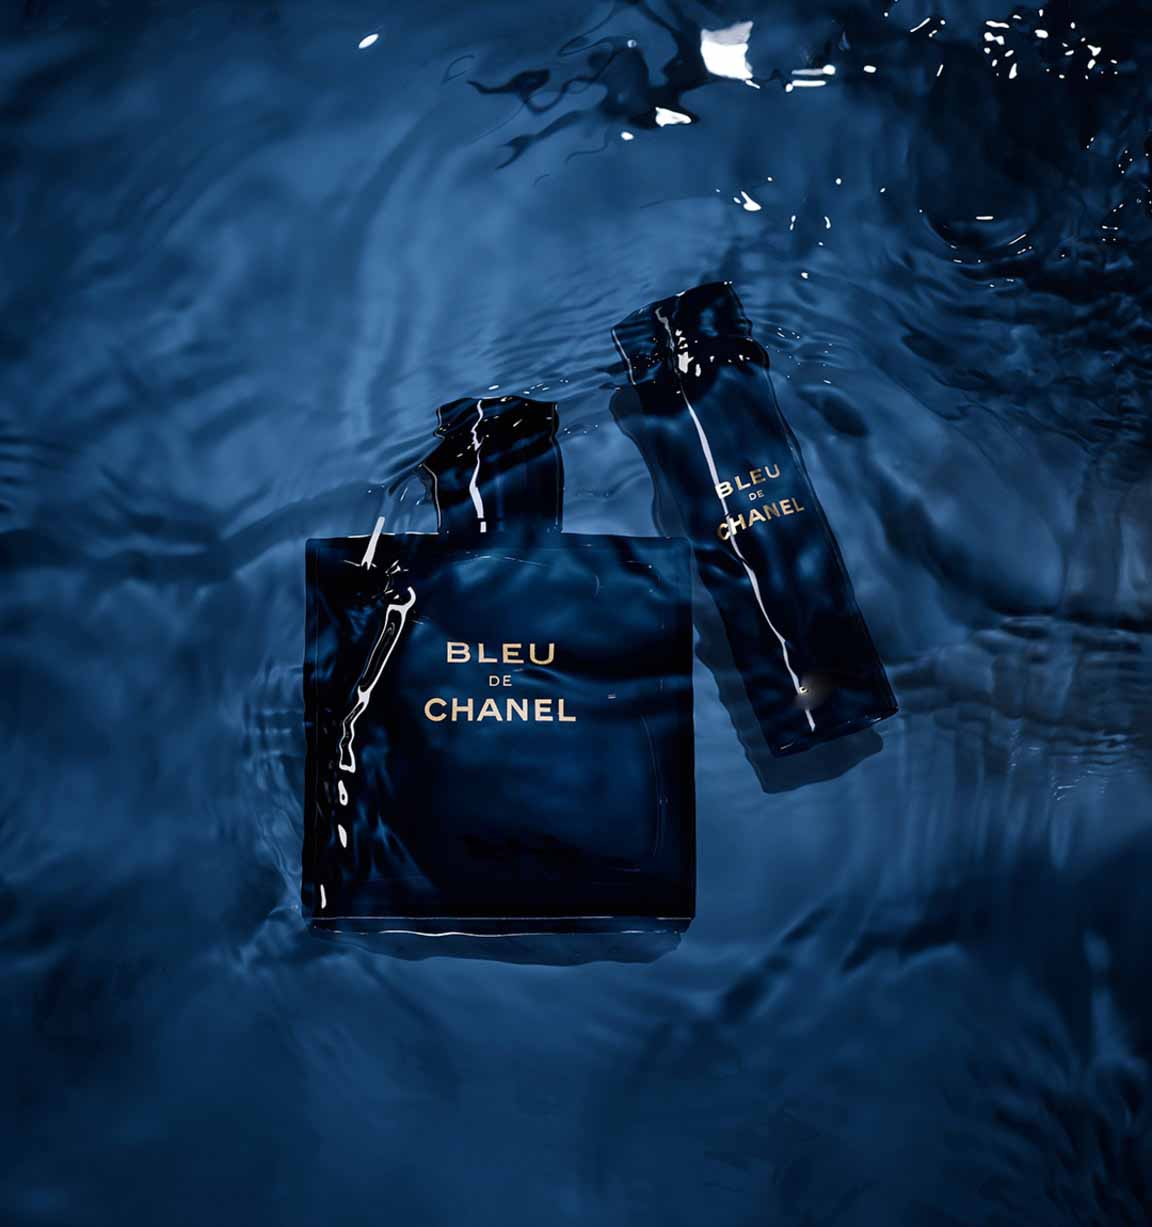 Blue - Impression of Bleu de Chanel – Incensepk